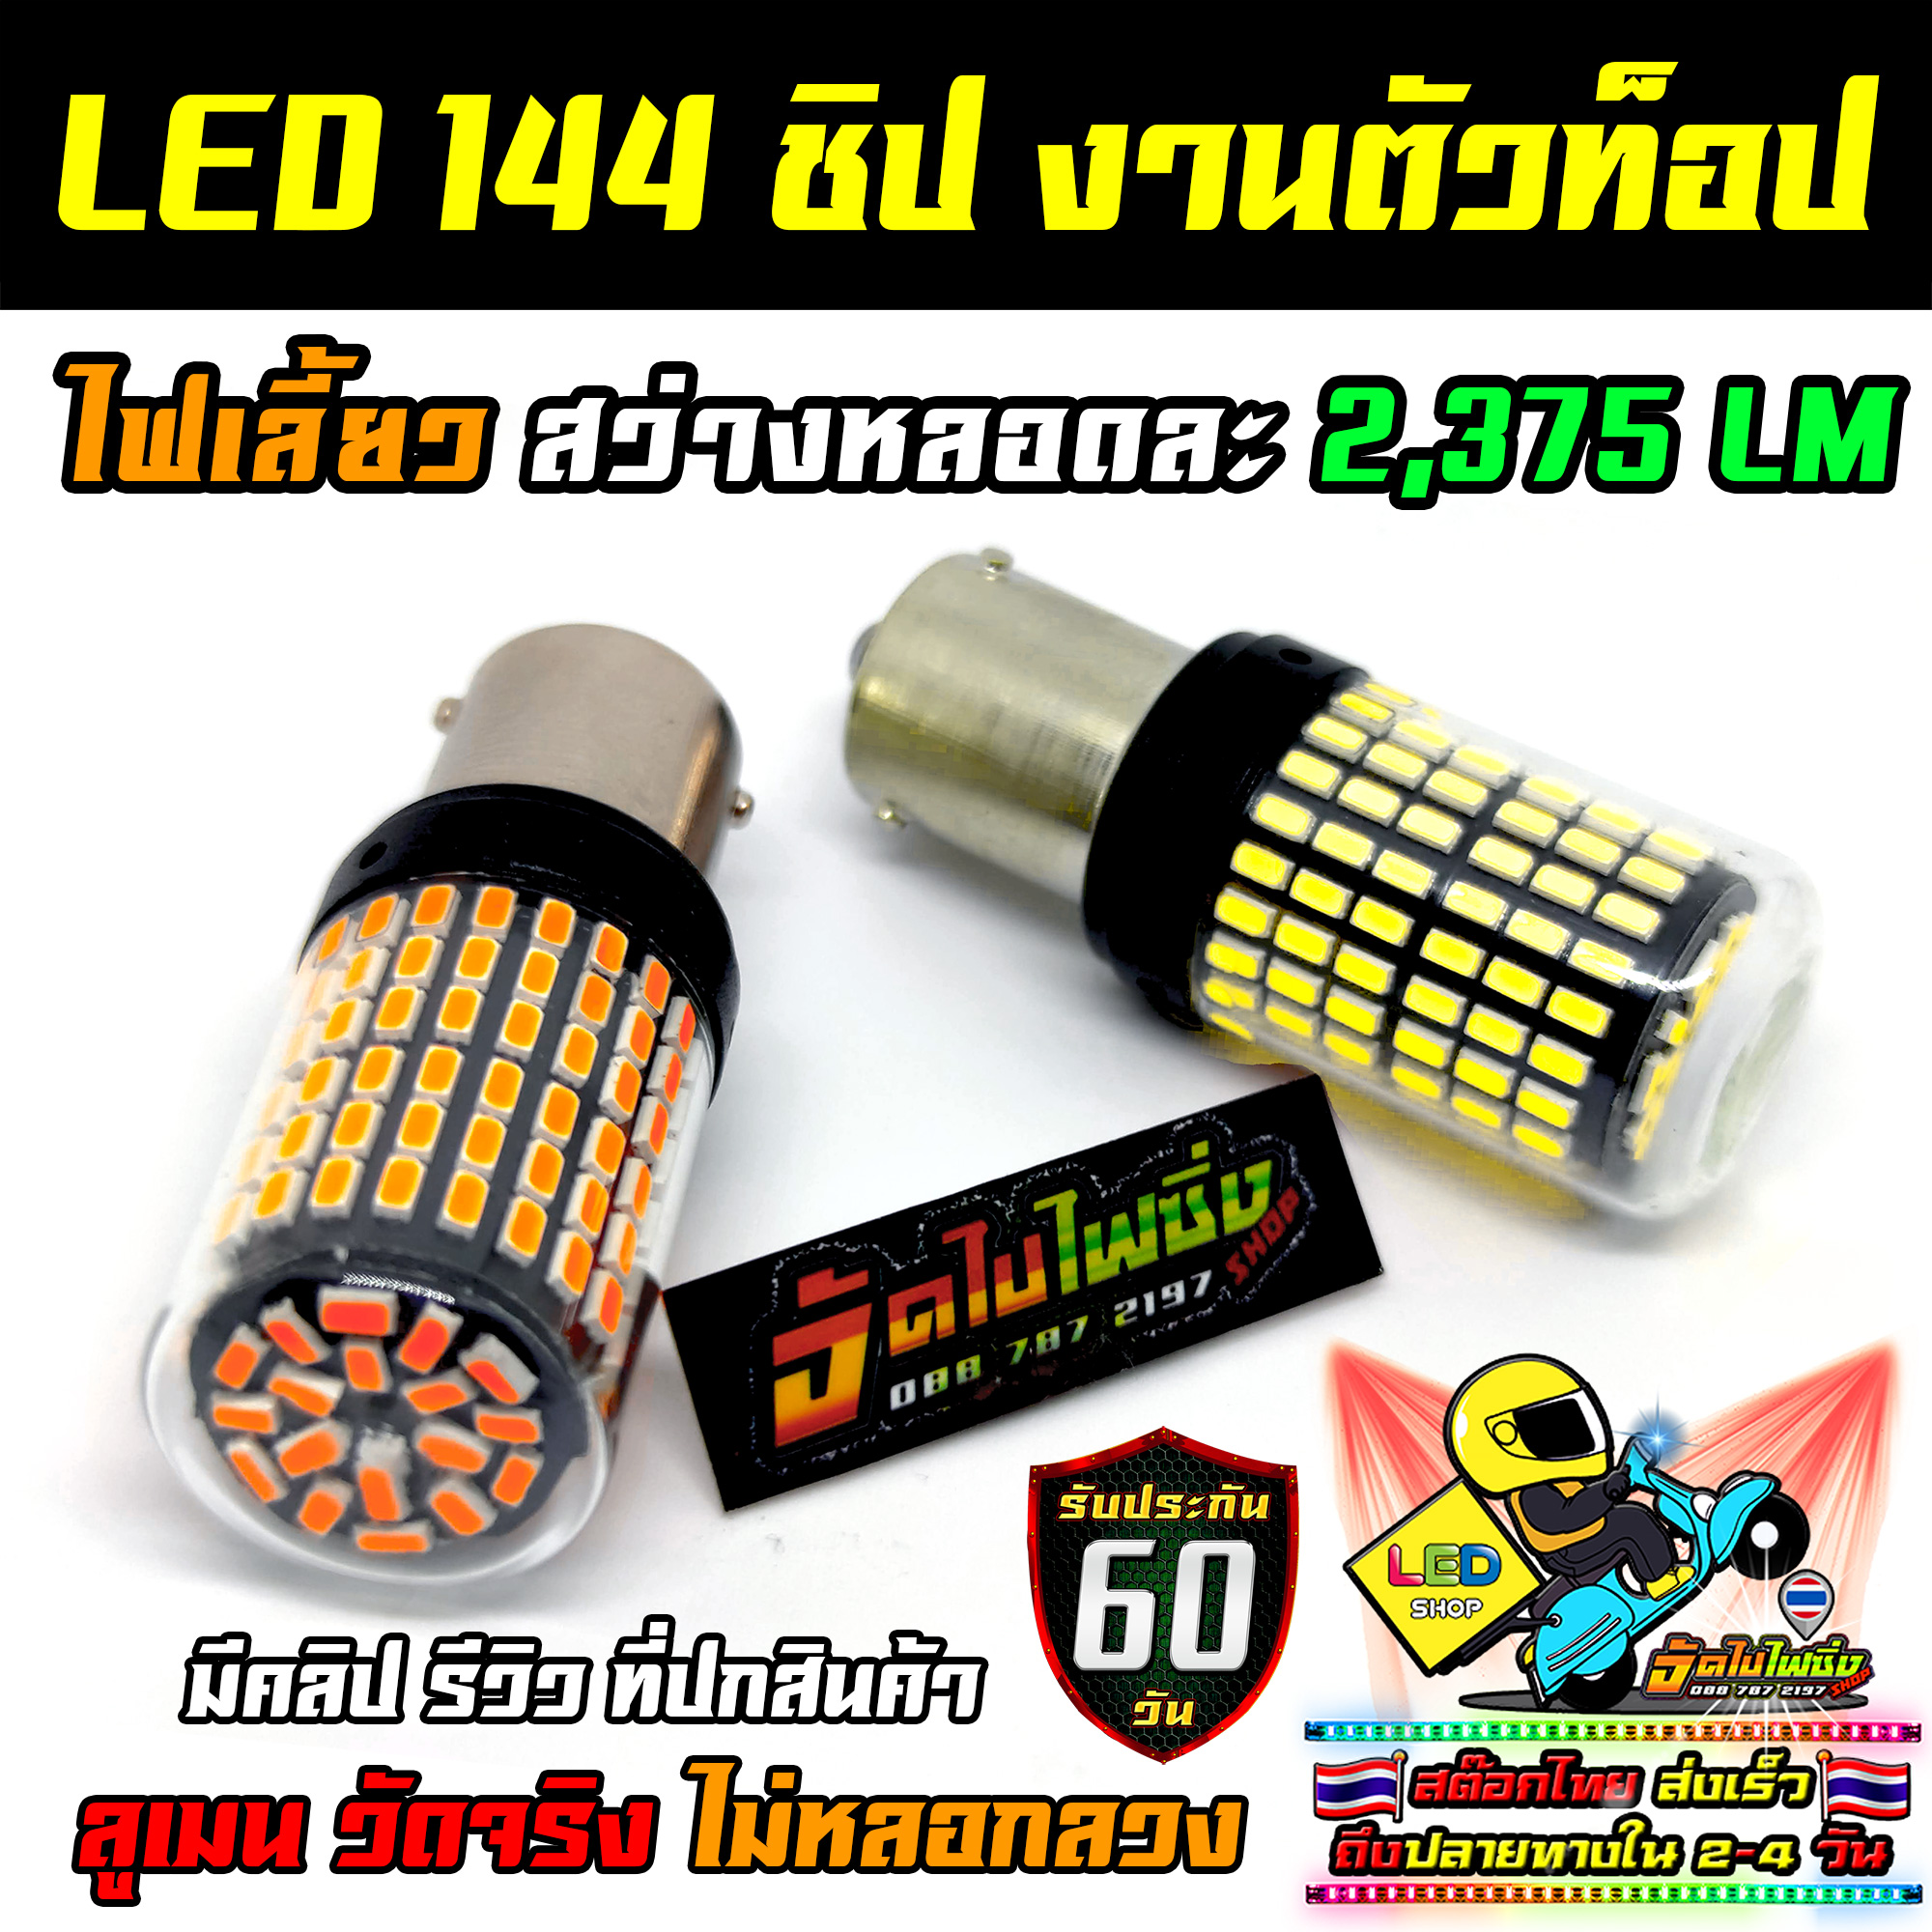 หลอดไฟ 144 ชิป สว่างที่สุดในไทย (ชุด 2 หลอด) วงจร LED CANBus แท้ รับประกัน 60 วัน (มีรีวิววัดลูเมน)